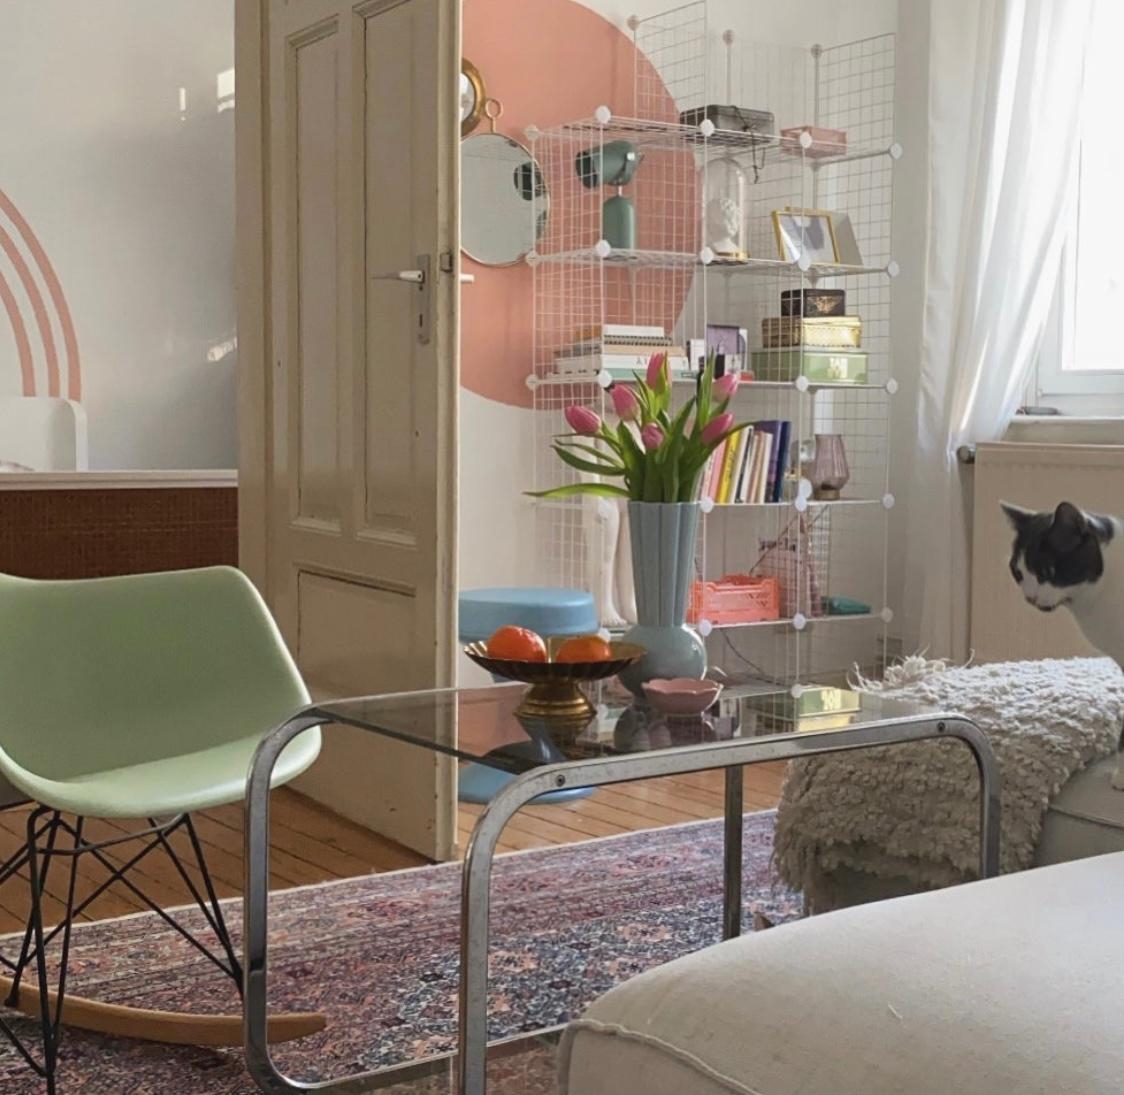 #wohnzimmer #altbau #altbauliebe #interior #design #colorful #spring #livingroom #deko #dekoration